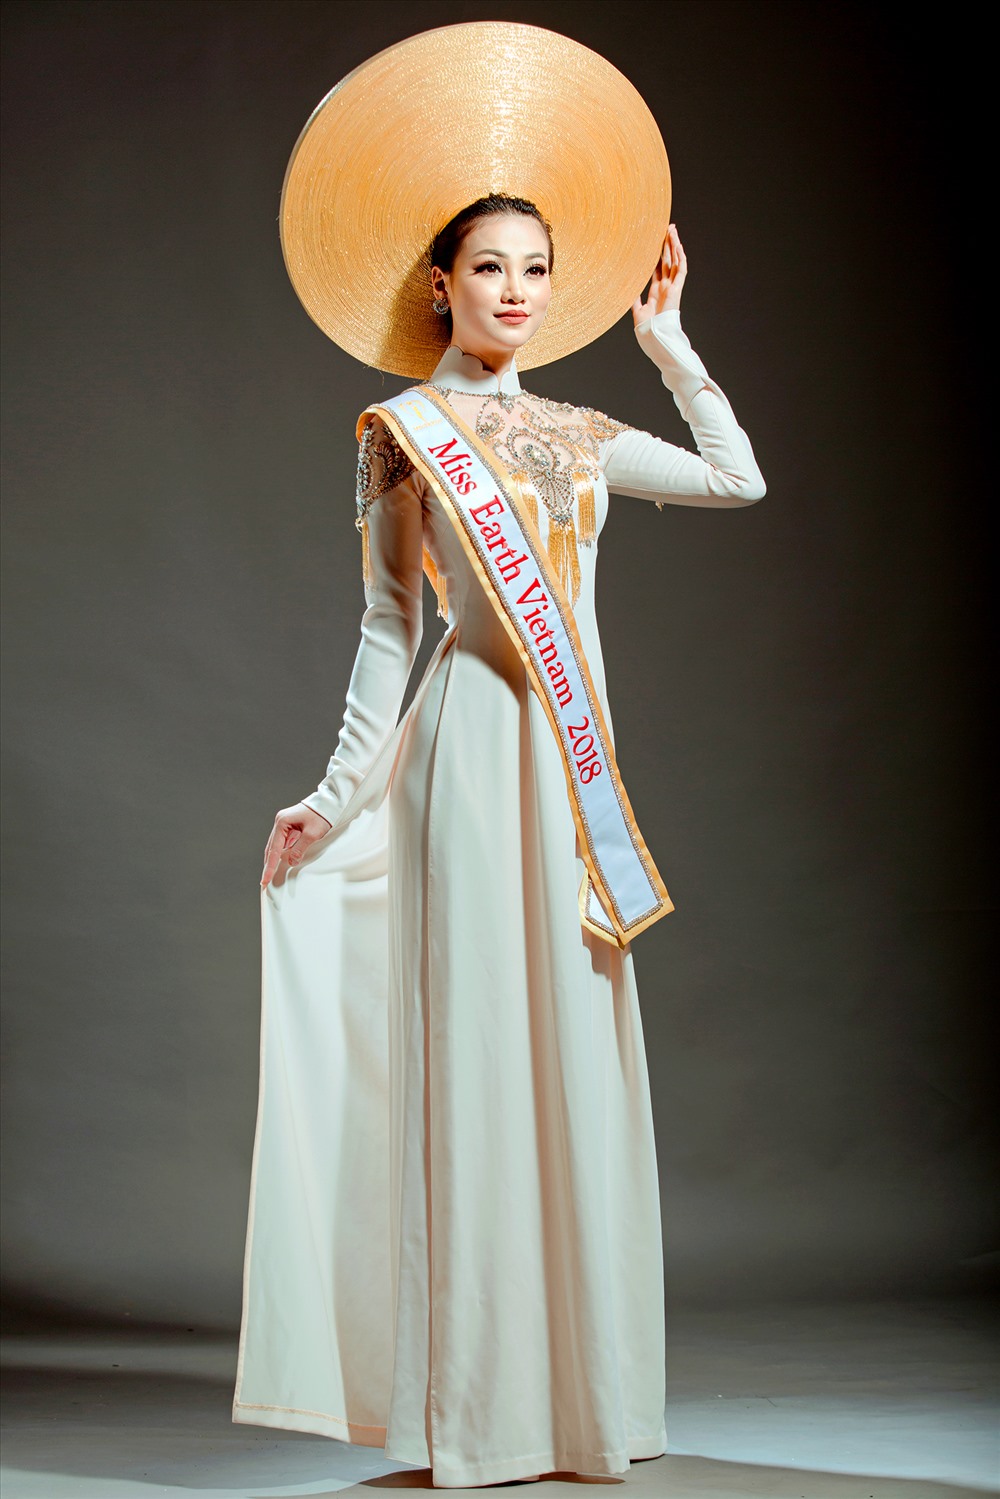 Nguyễn Phương Khánh sẽ tranh tài cùng 94 nhan sắc khác đến từ các Quốc gia trên thế giới tại cuộc thi Hoa hậu Trái đất 2018.